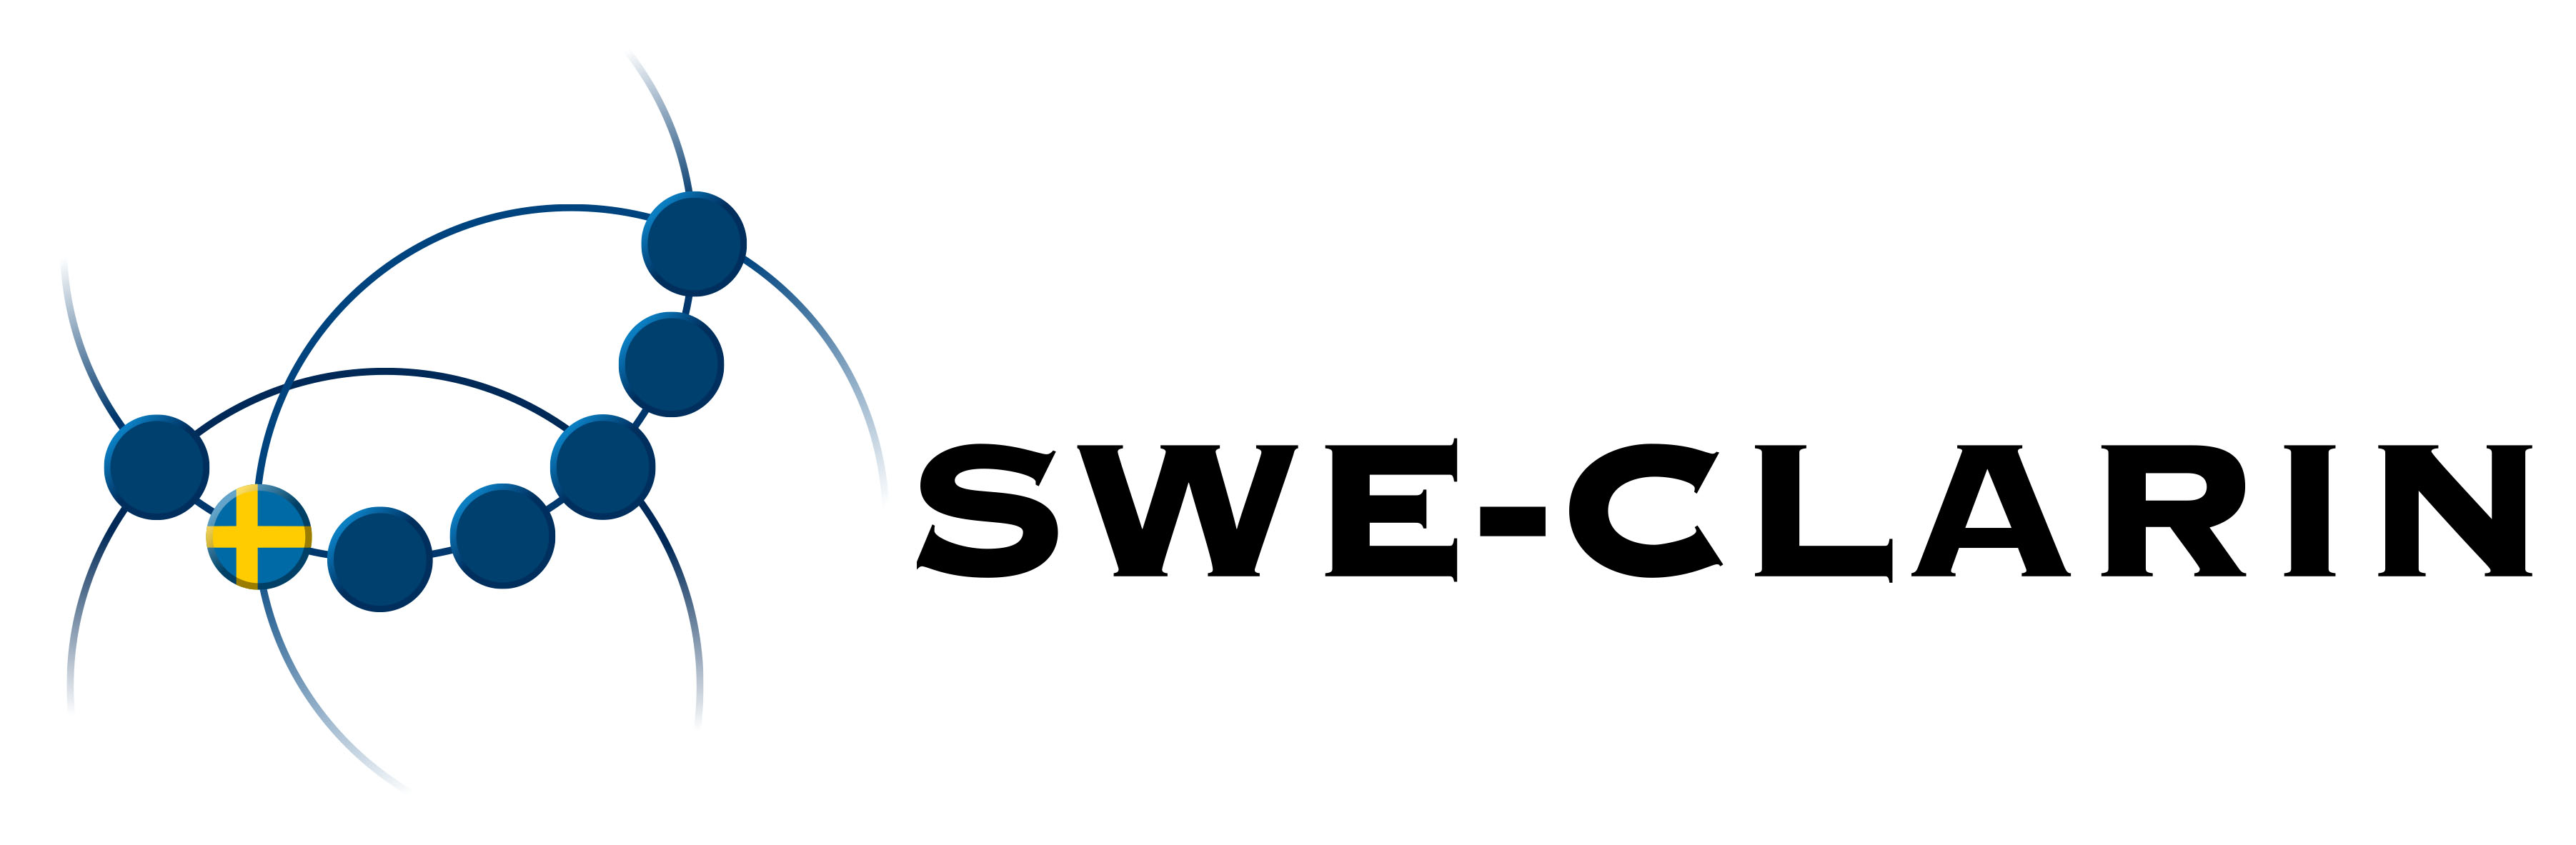 sweclarin logo